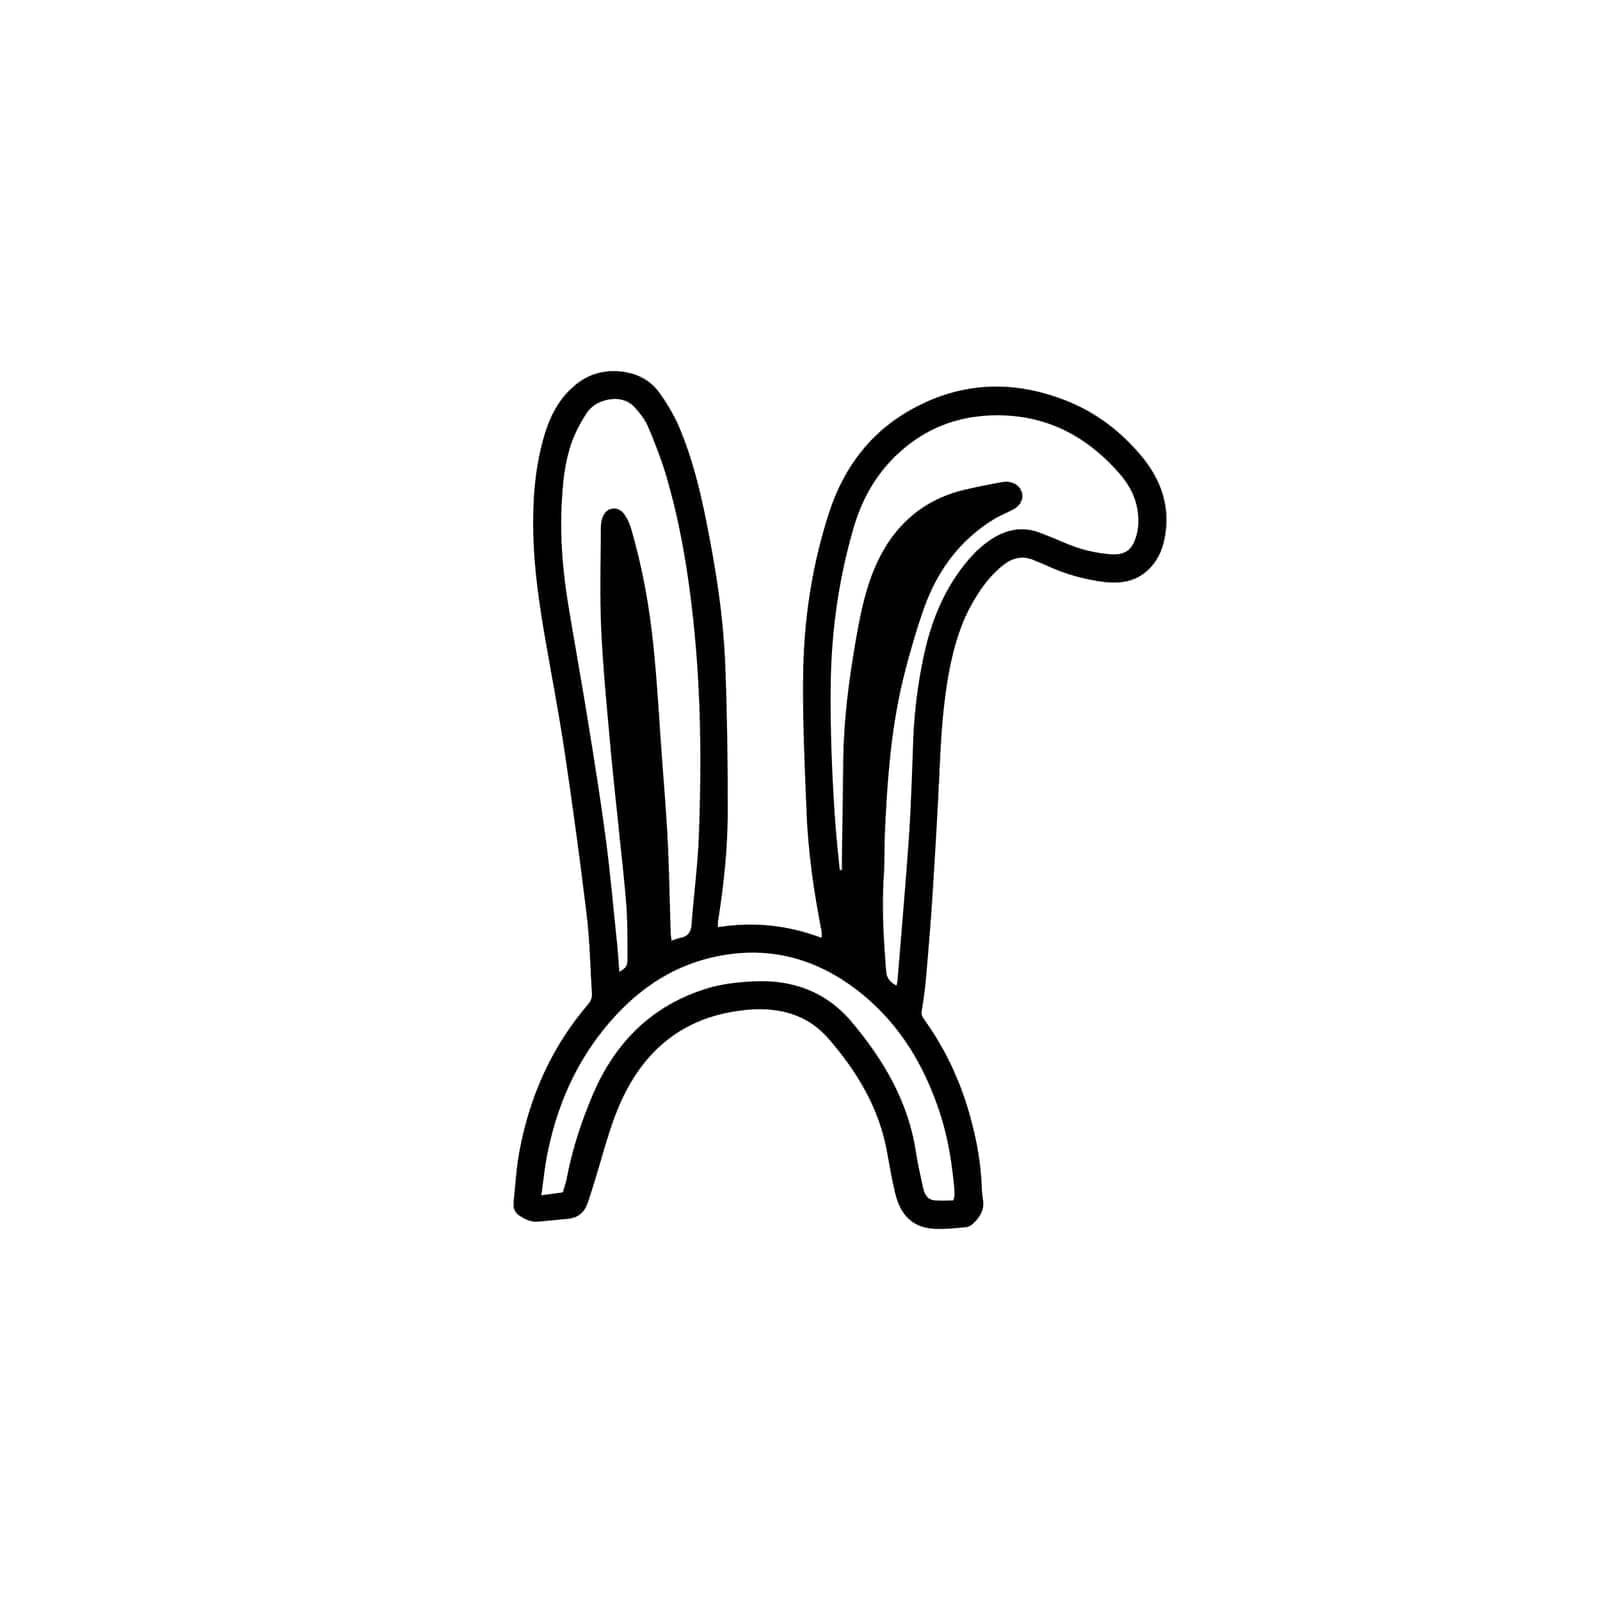 Cute rabbit ears hat. Bunny ears.doodle style by Dustick